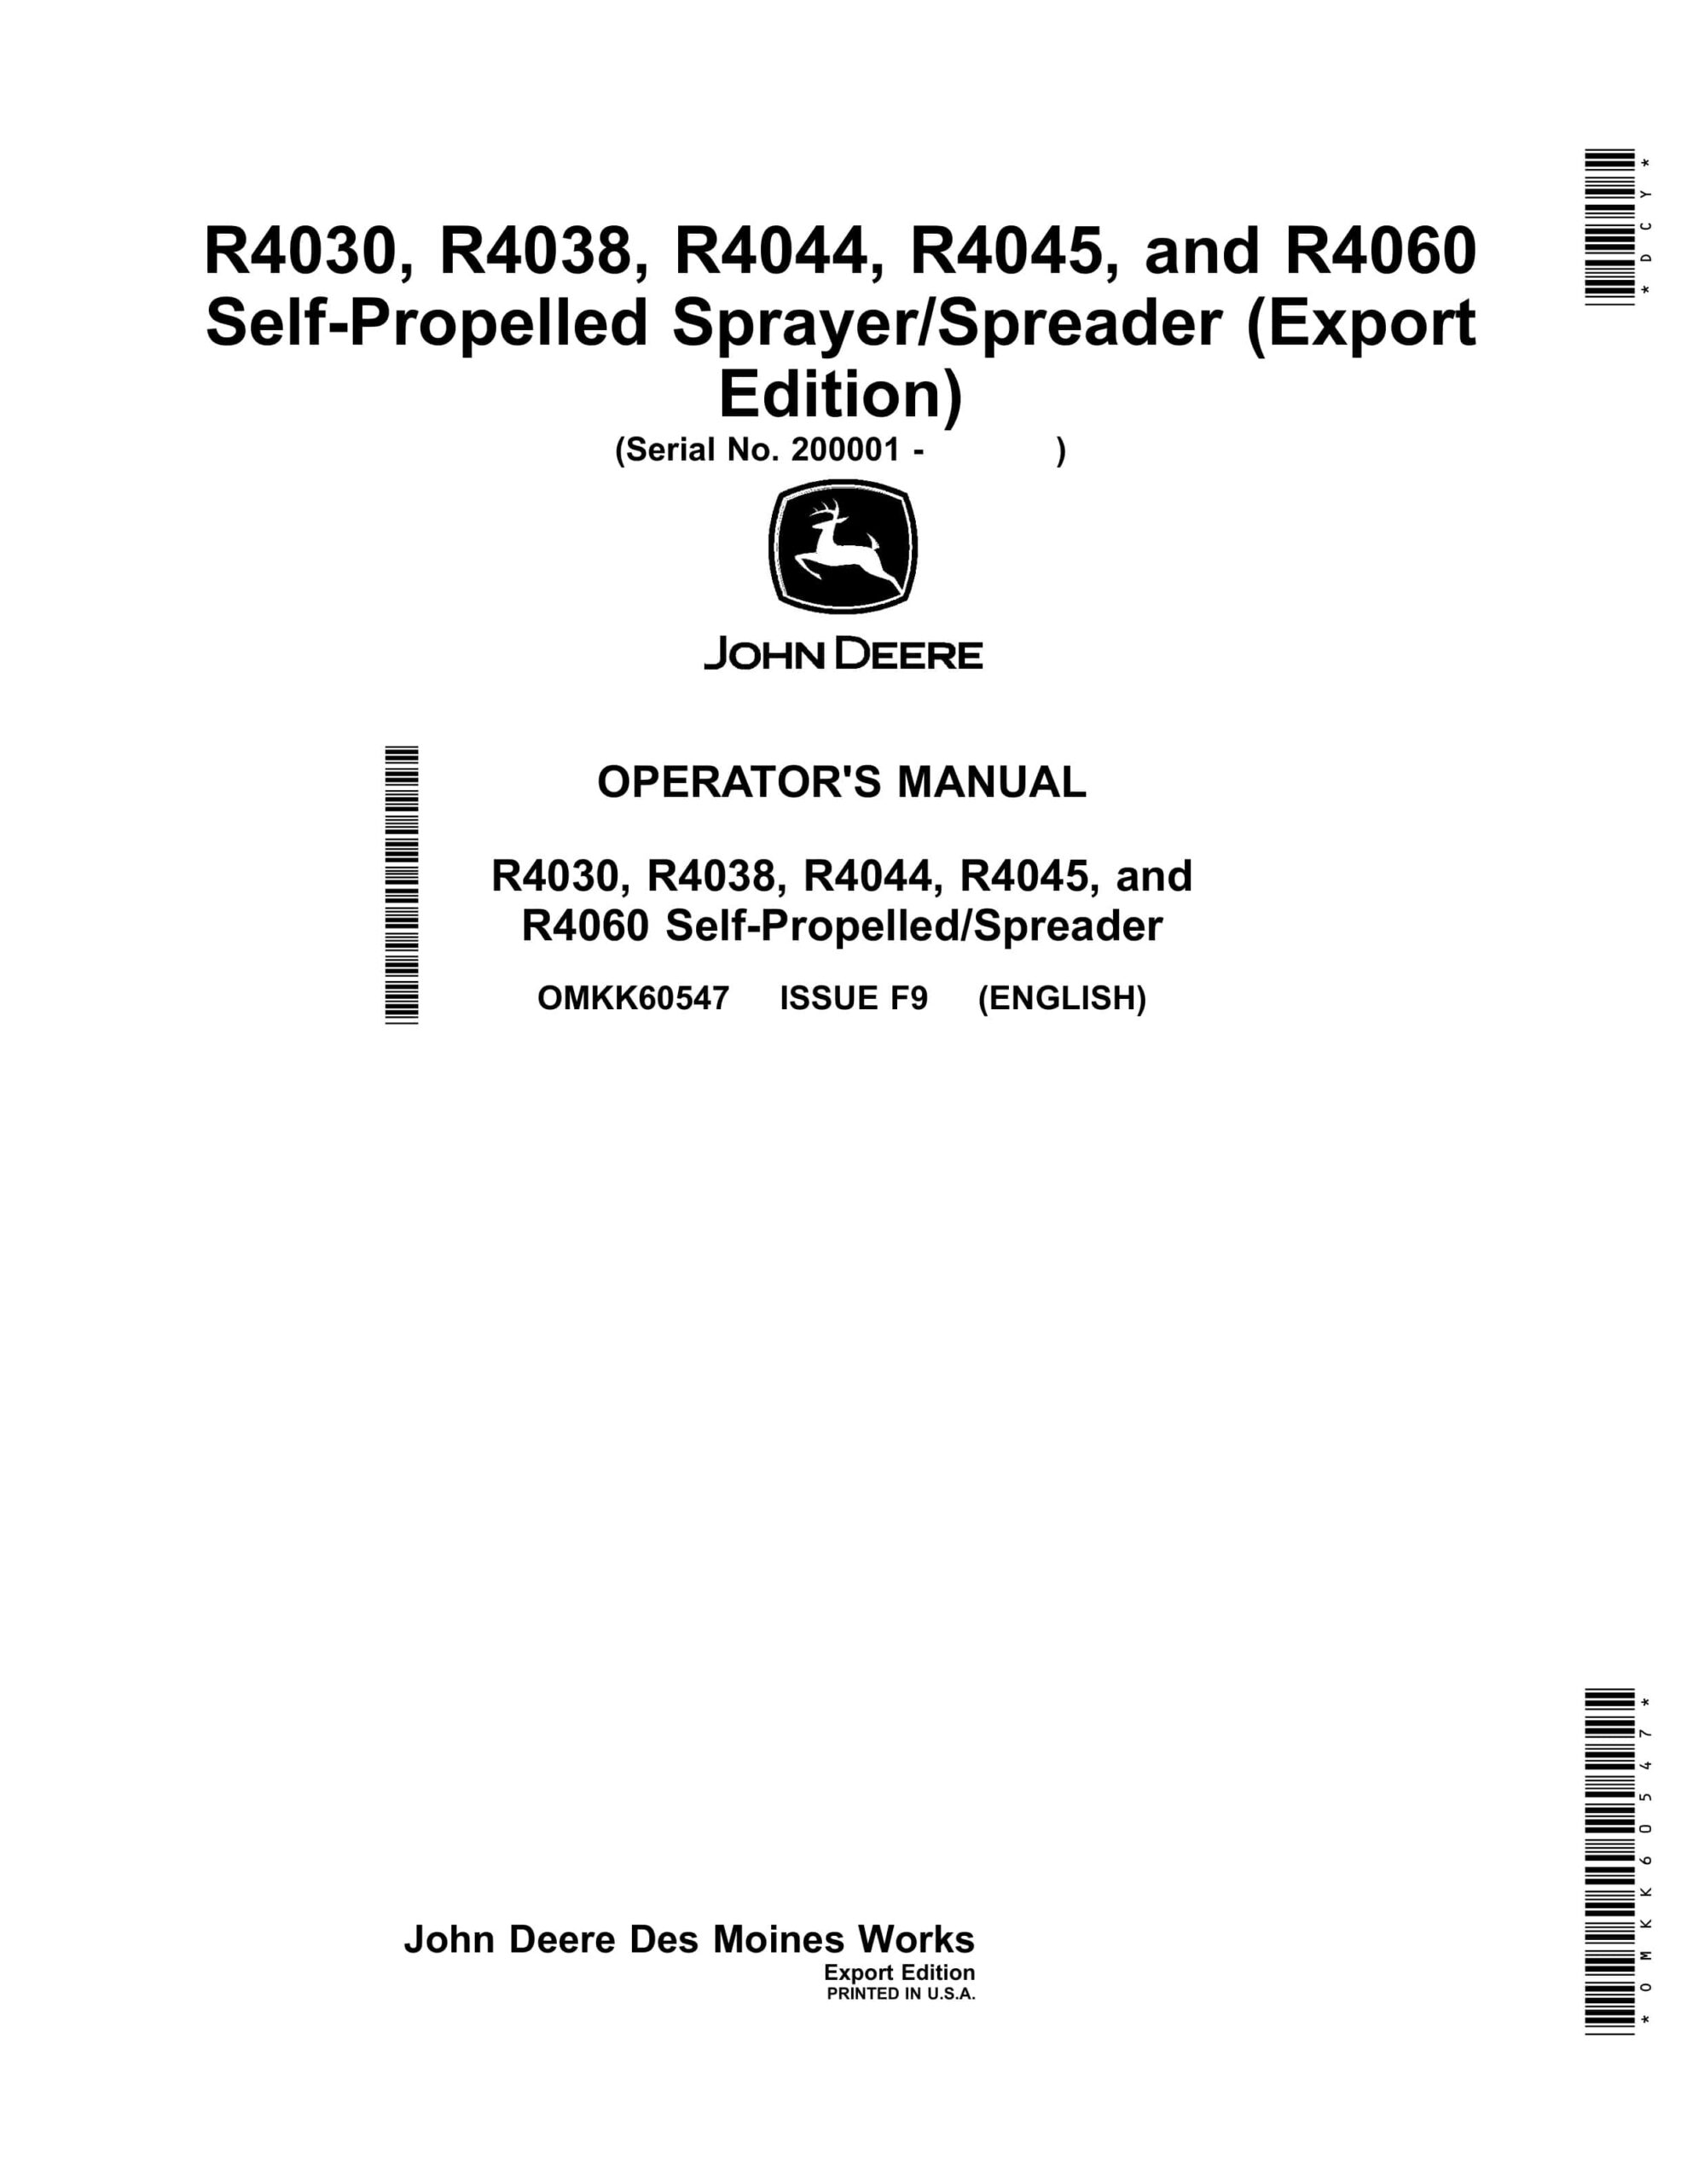 John Deere R4030, R4038, R4044, R4045, and R4060 Self Operator Manual OMKK60547-1